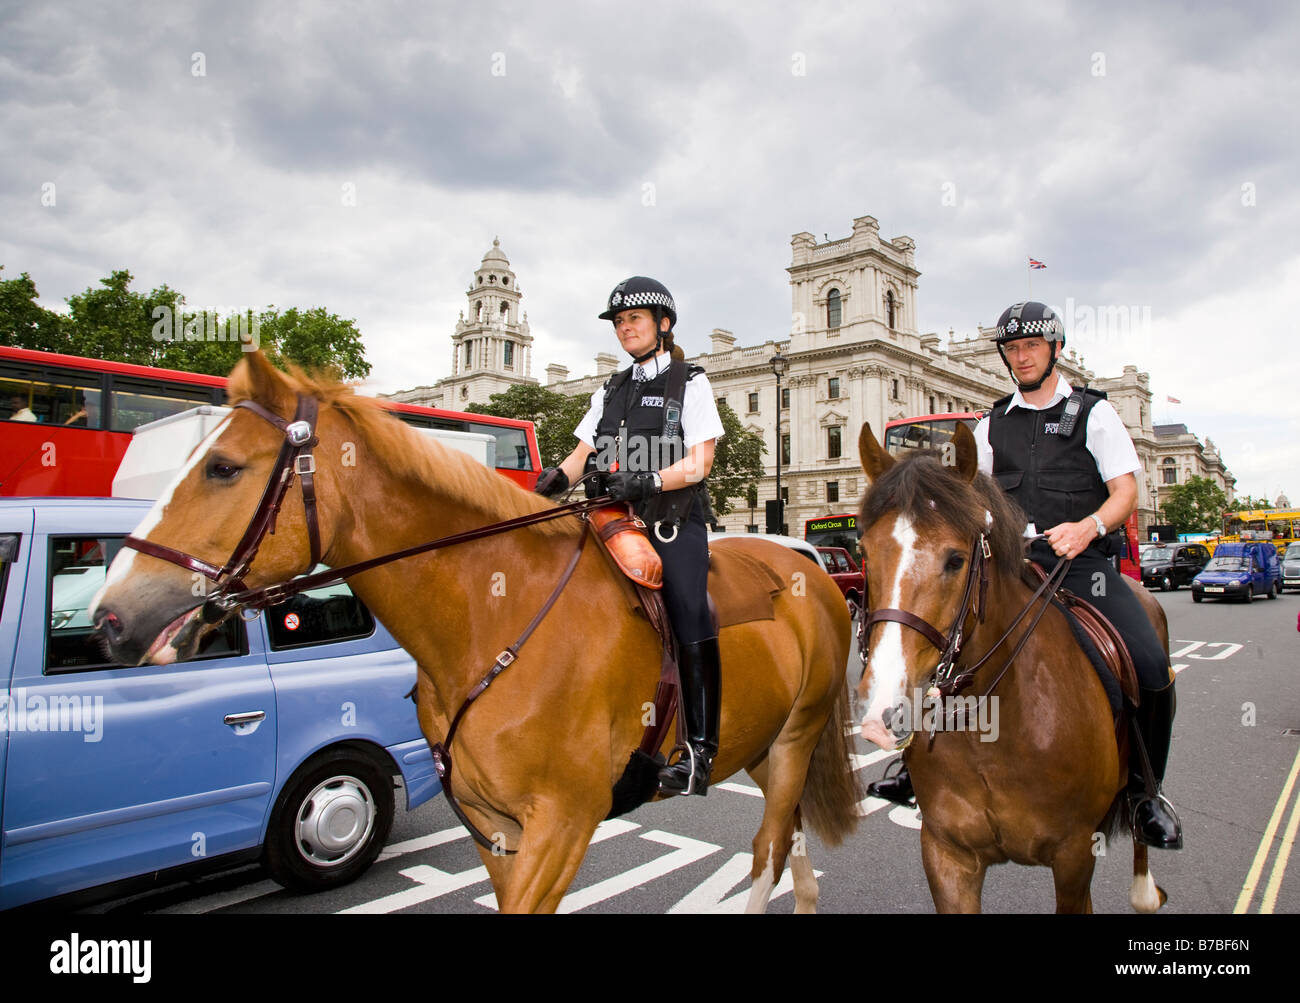 Zwei Polizisten montiert auf Pferden im Parlament Square in London England Stockfoto